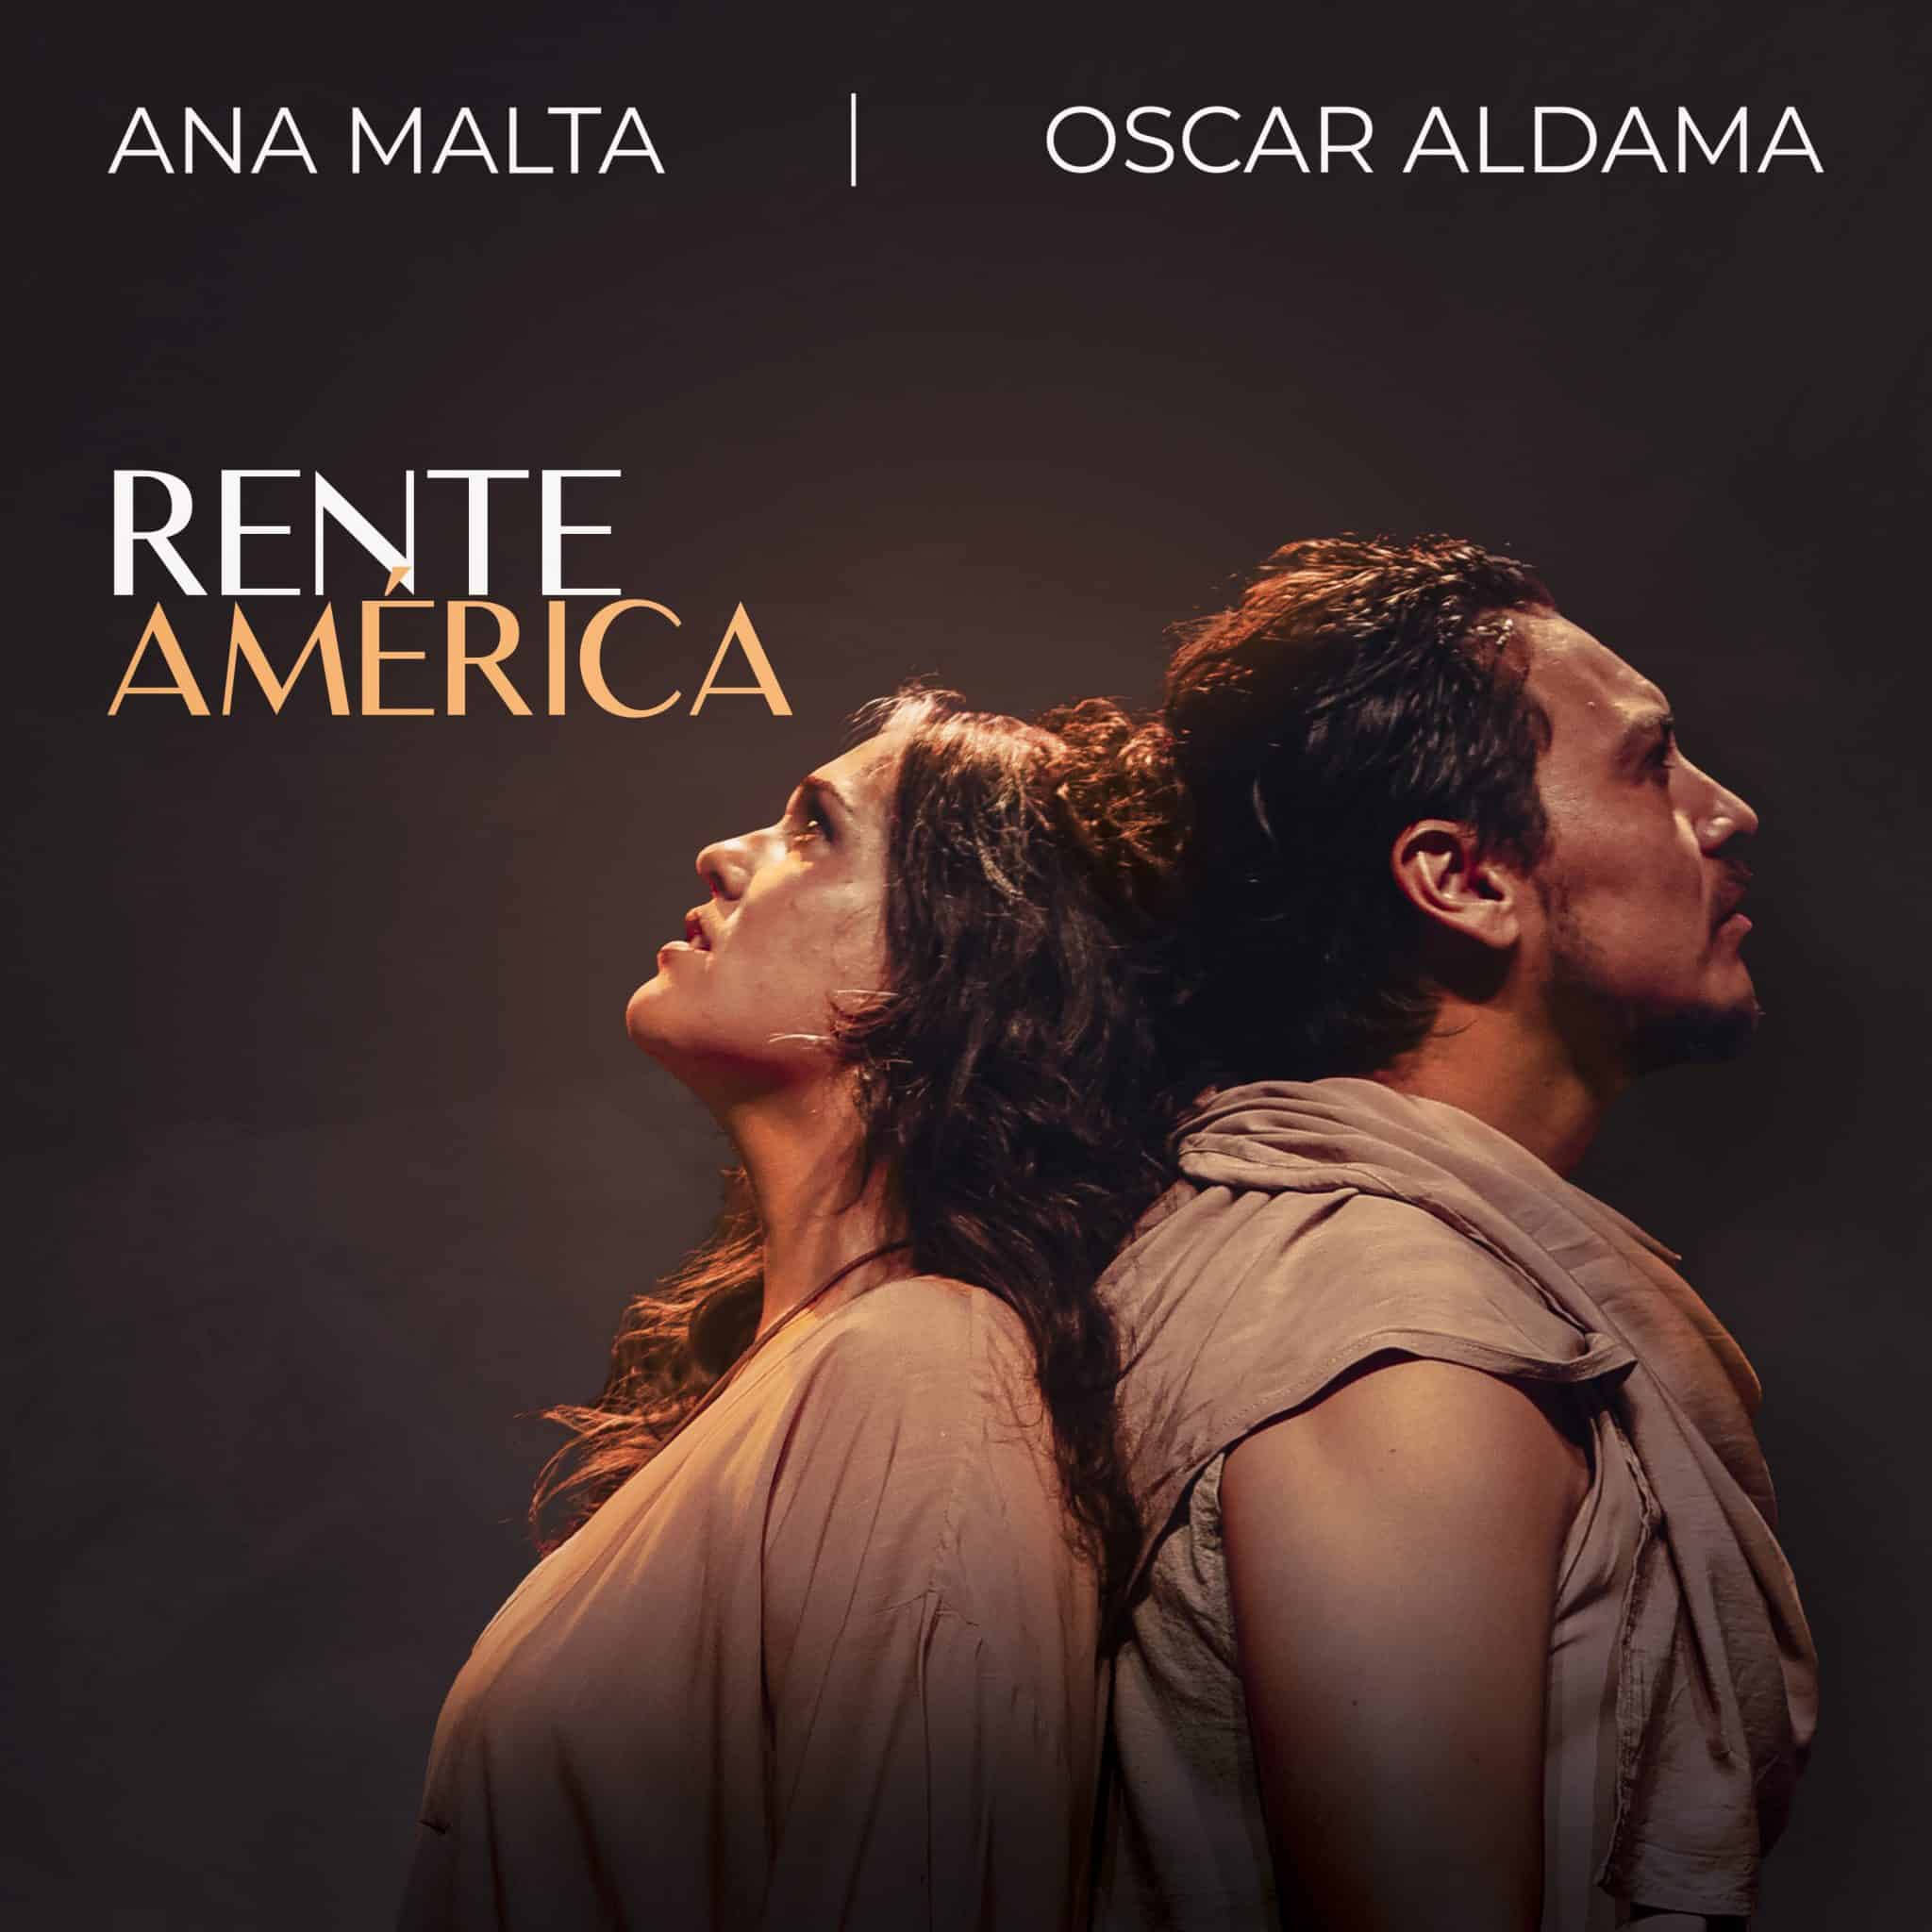 revistaprosaversoearte.com - 'Rente América', álbum de Ana Malta e Oscar Aldama